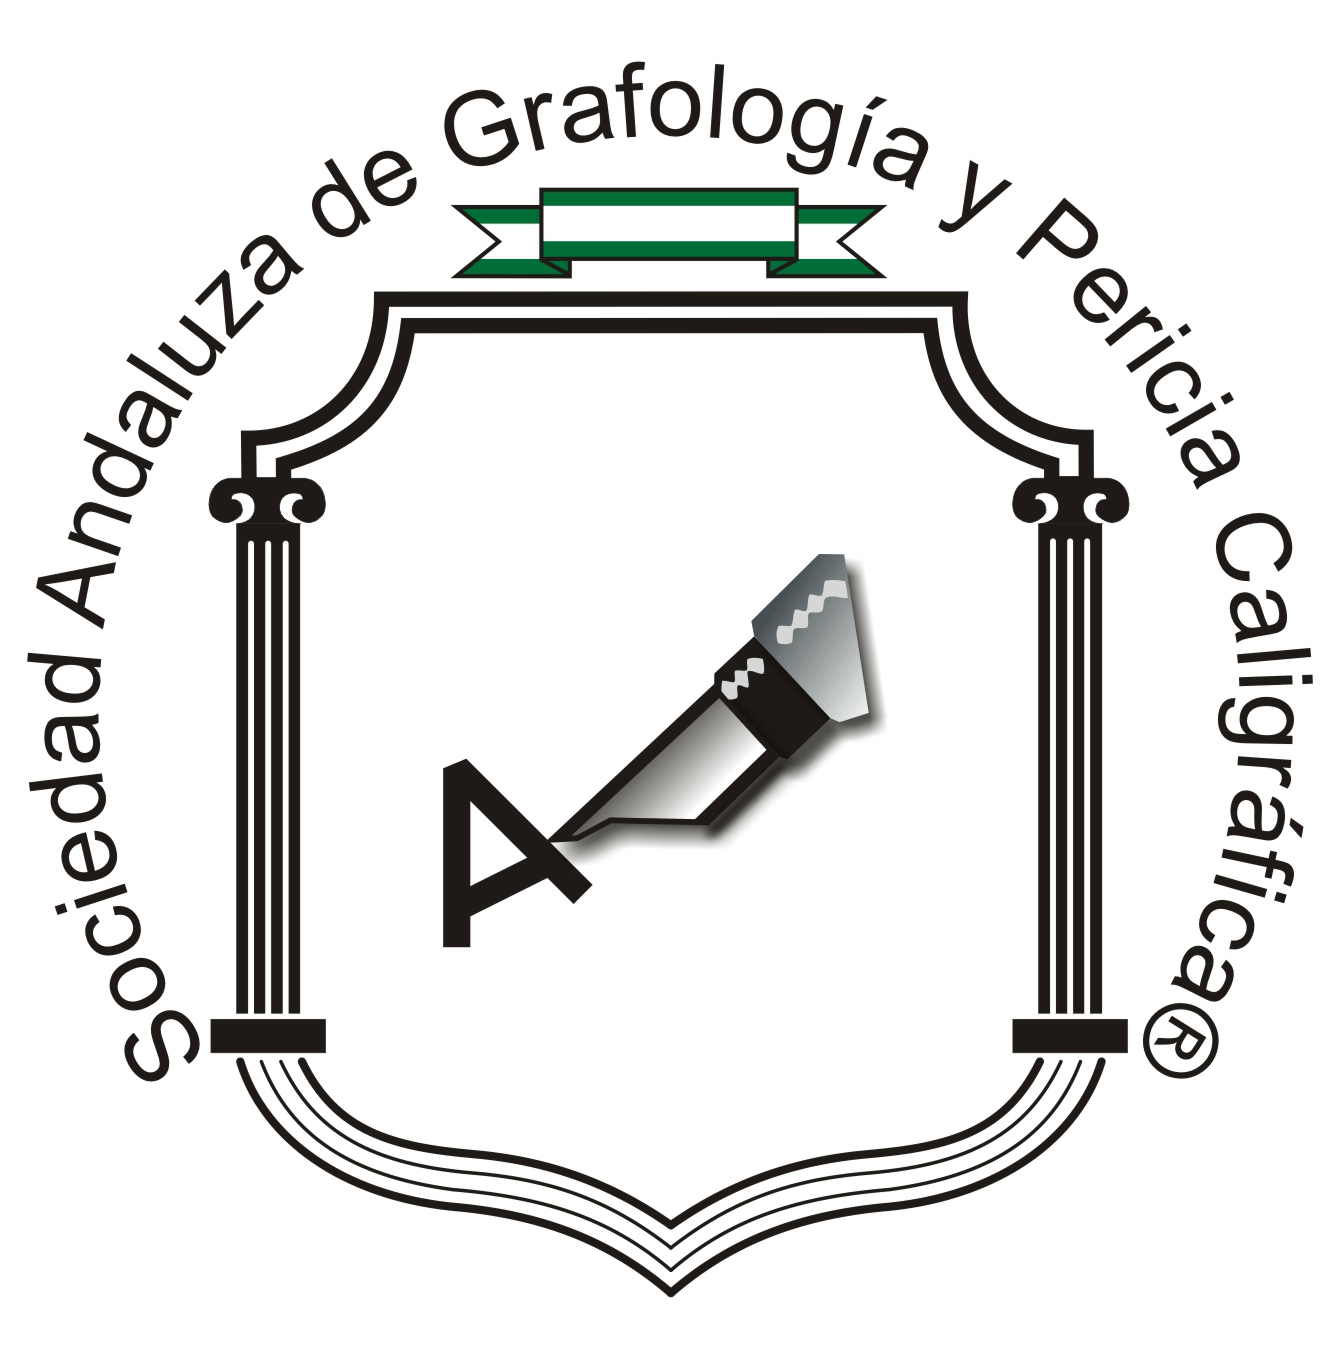 Sociedad Andaluza de Grafología